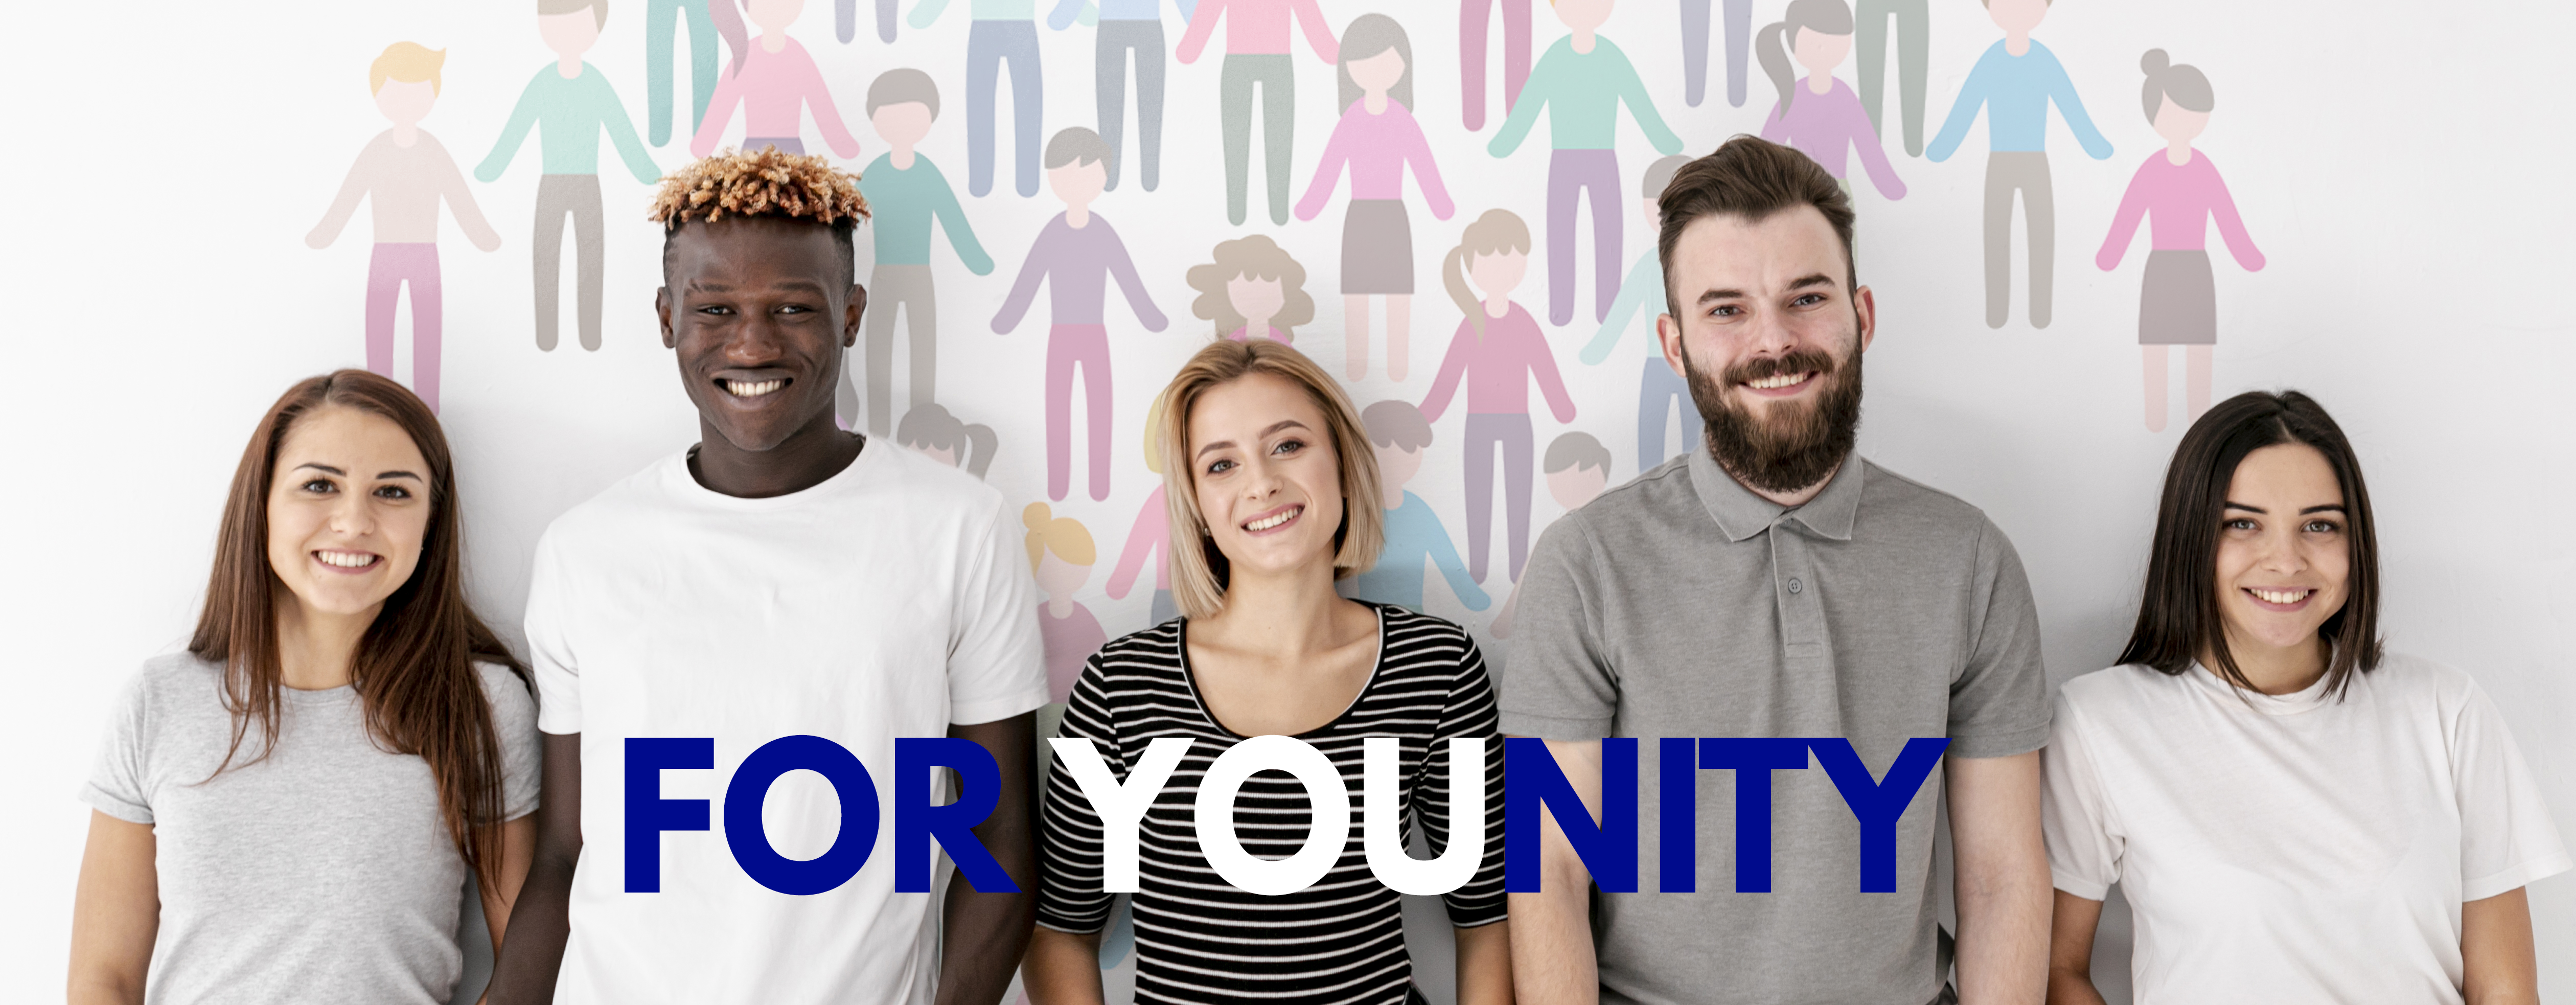 Poszukujemy wolontariuszy do jednorocznego projektu „For YOUnity”, który odbędzie się w ramach Europejskiego Korpusu Solidarności